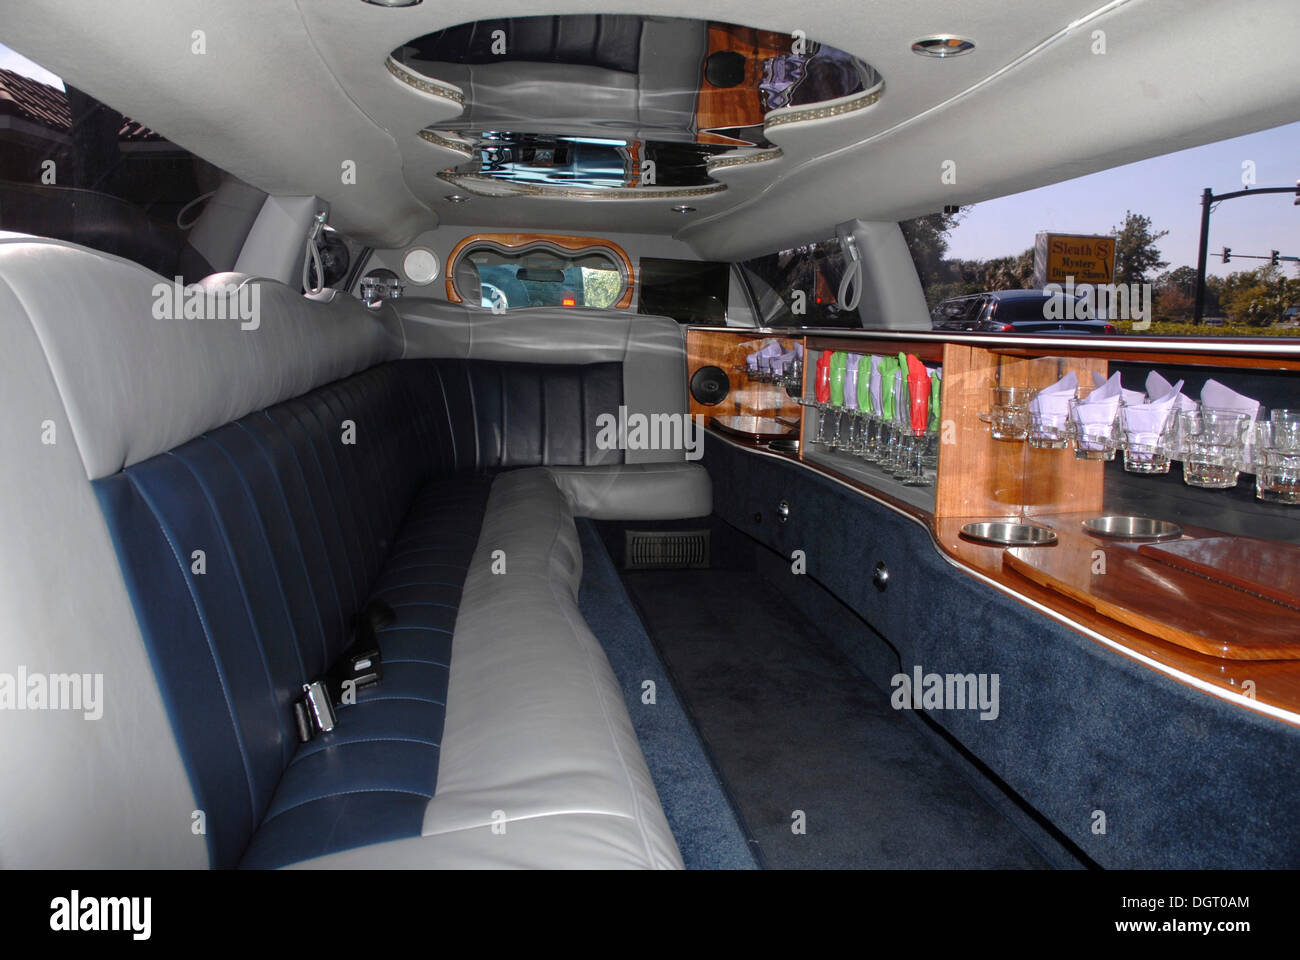 Principal 164+ images interior of a limousine - br.thptnvk.edu.vn